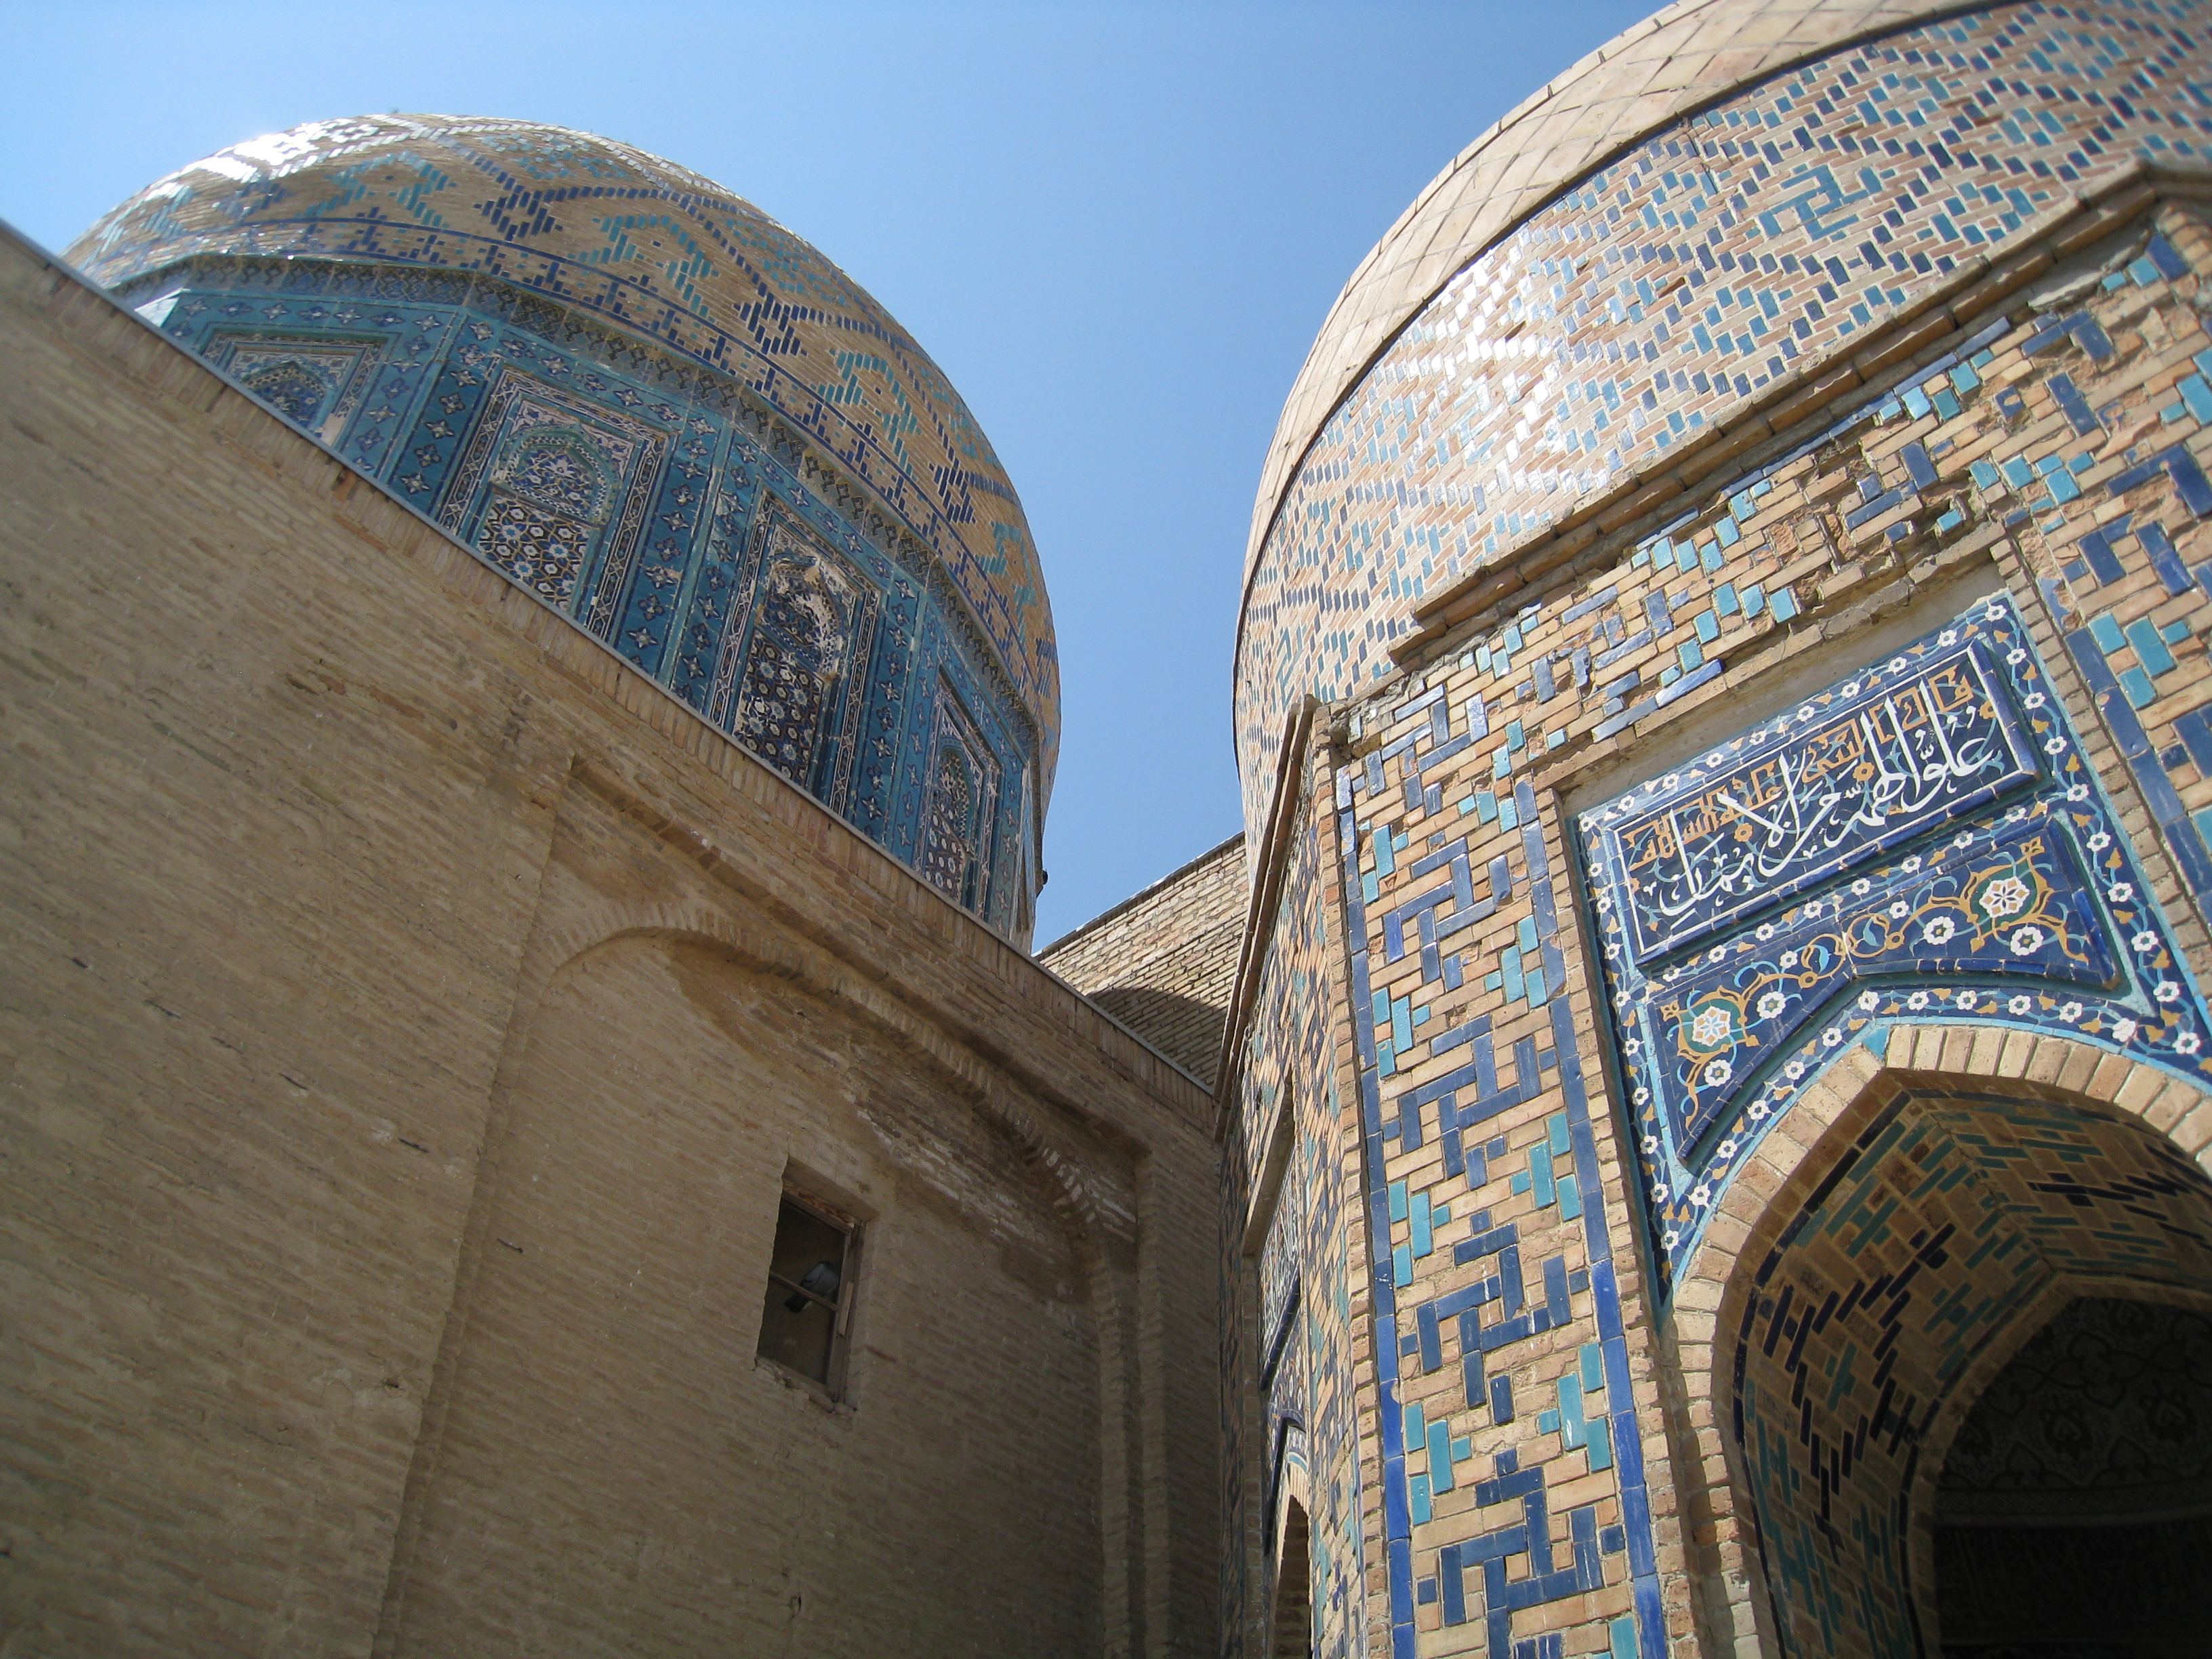 Shah-i-Zinda in Samarkand